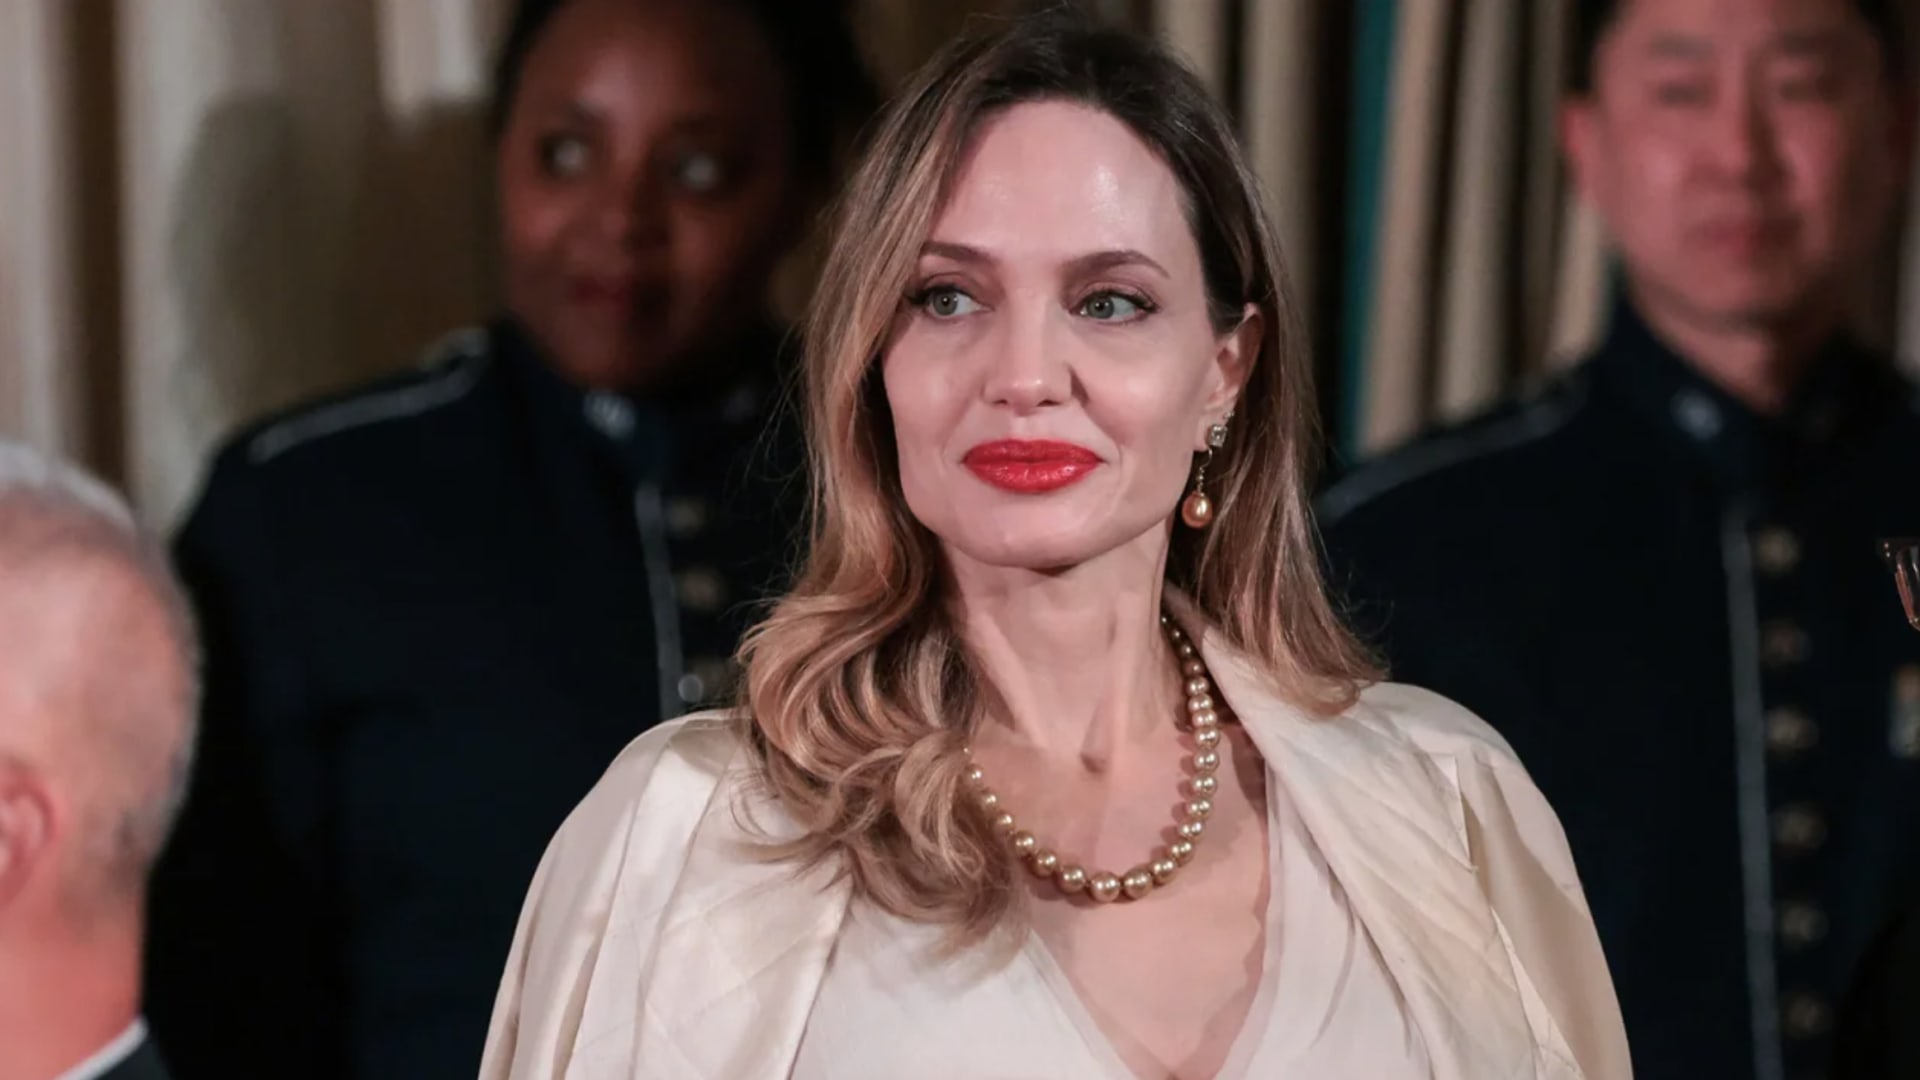 أنجلينا جولي تطلق علامتها التجارية الخاصة Atelier Jolie.. لماذا؟ CNN